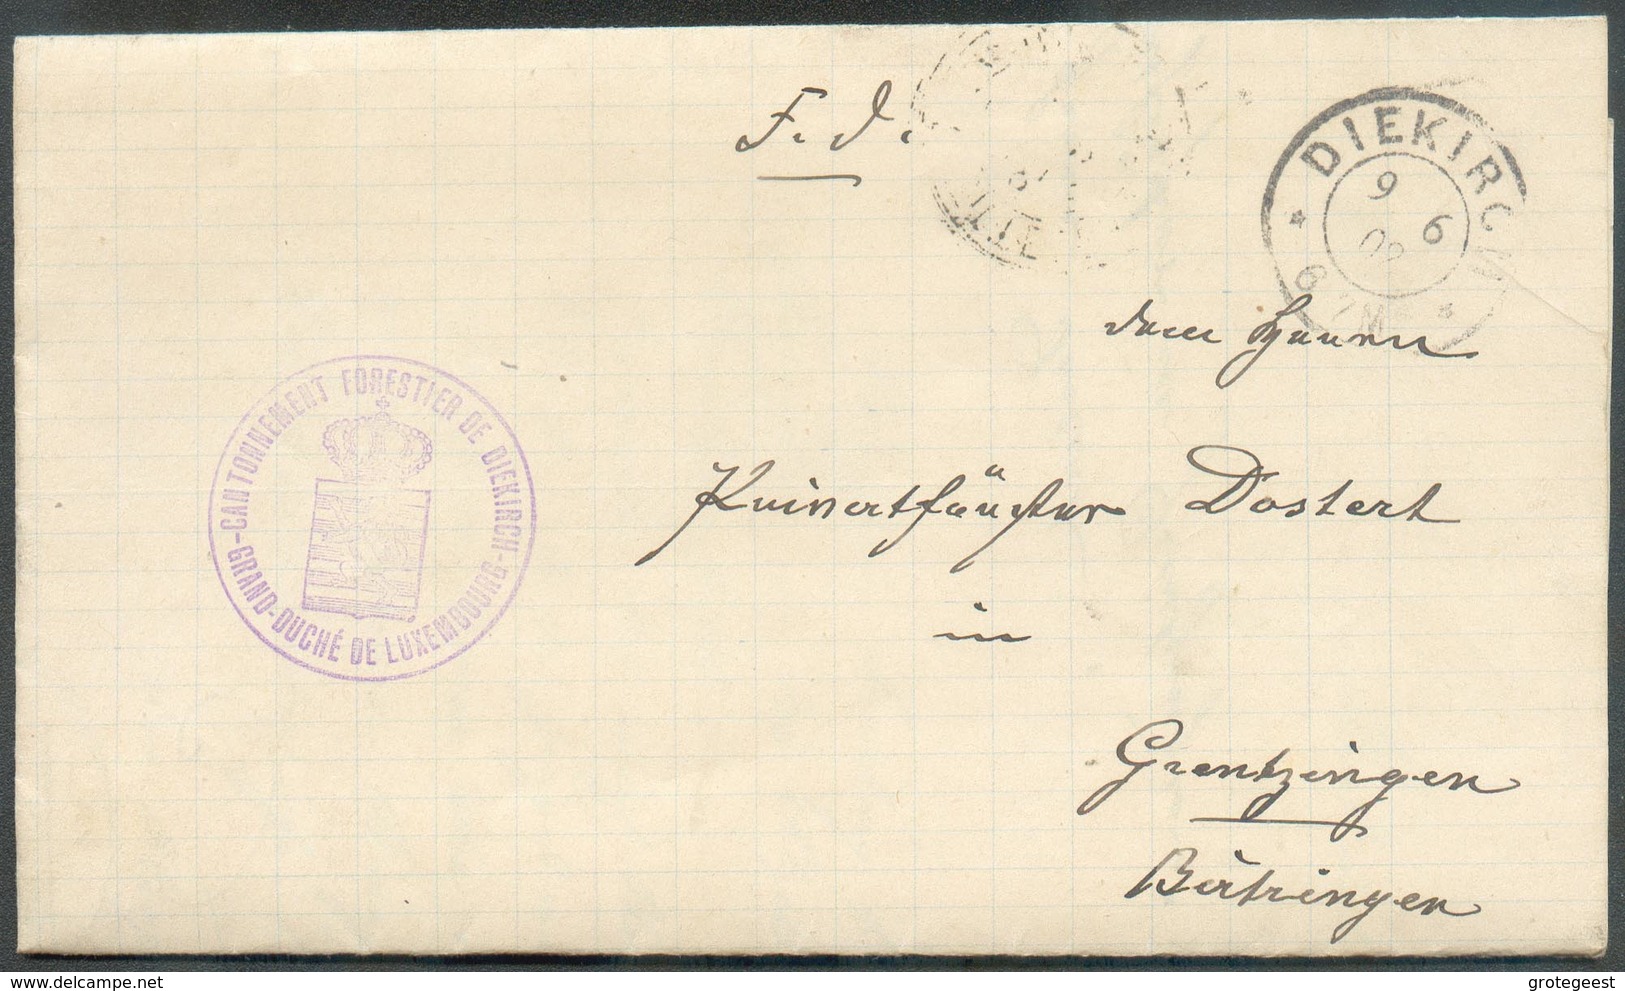 Lettre En Franchise De Port De DIEKIRCH Le 9-6-1902 Avec Cachet Violet CANTONNEMENT FORESTIER DE DIEKIRCH * GRAND-DUCHE - Dienstmarken